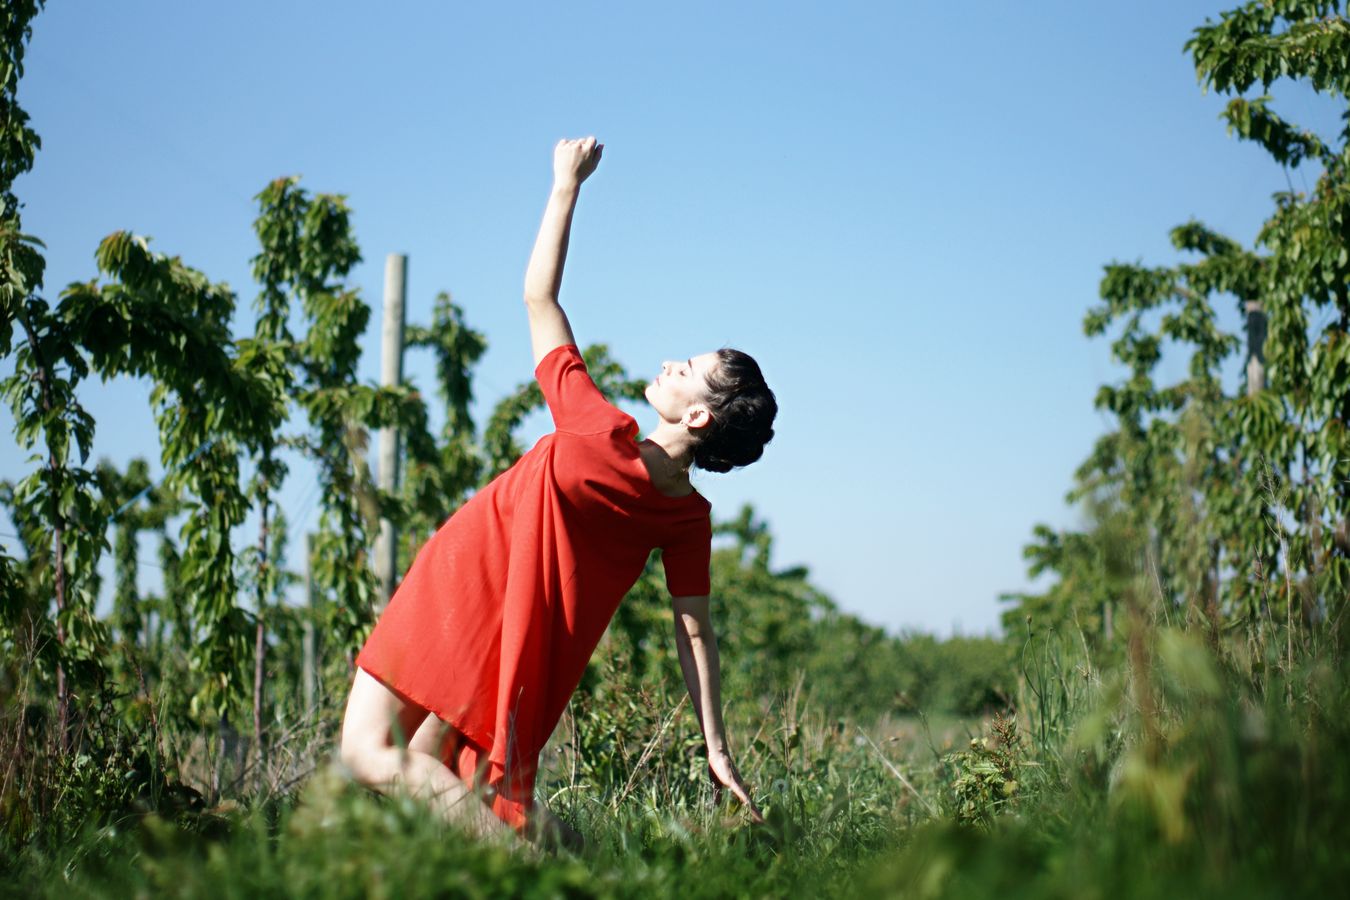 Au milieu des cerisiers de Saint-Laurent-d'Agny, Mathilde fait de la danse contemporaine en robe rouge. Son corps chute, alors en arrière comme si elle avait été renversée par le soleil.